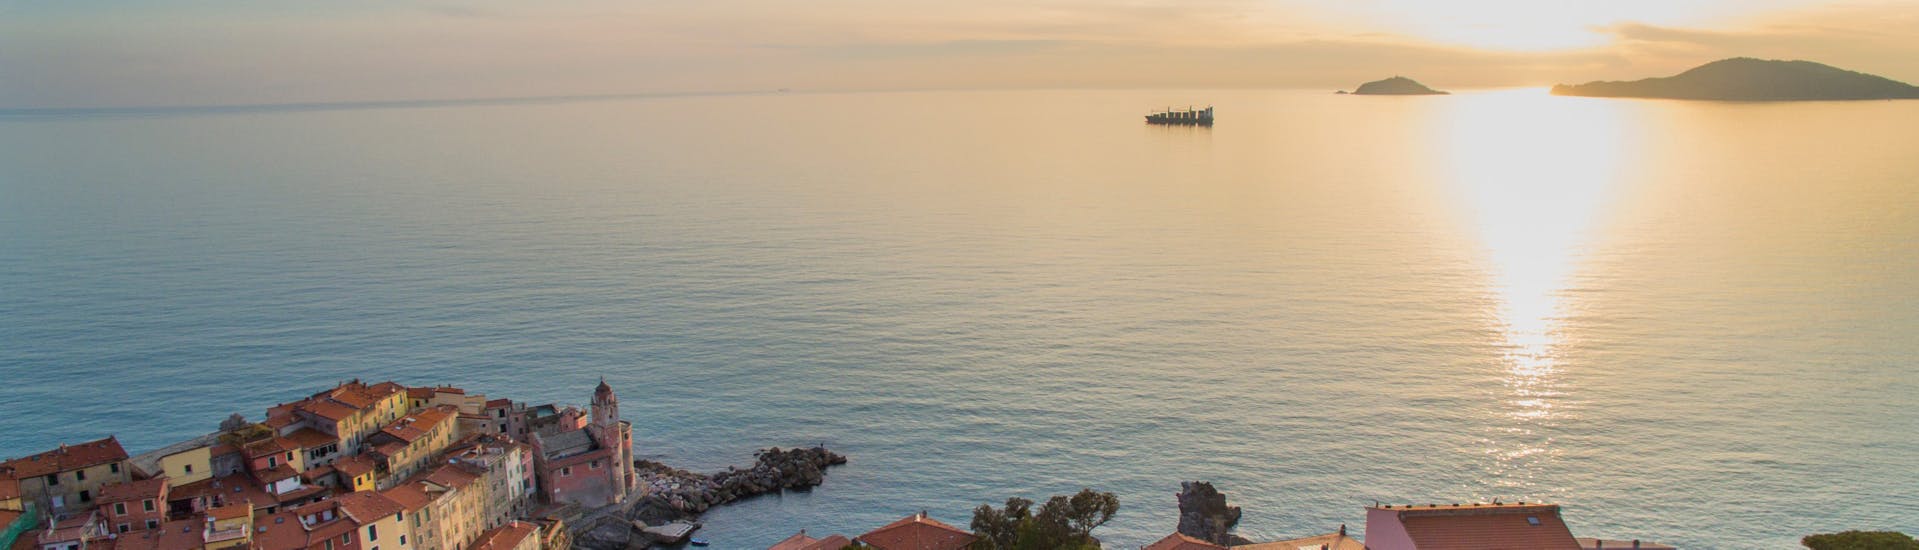 Uitzicht op de kustlijn die je te zien krijgt tijdens de Privé Boottocht langs de Cinque Terre en Porto Venere met Aquamarina Cinque Terre.